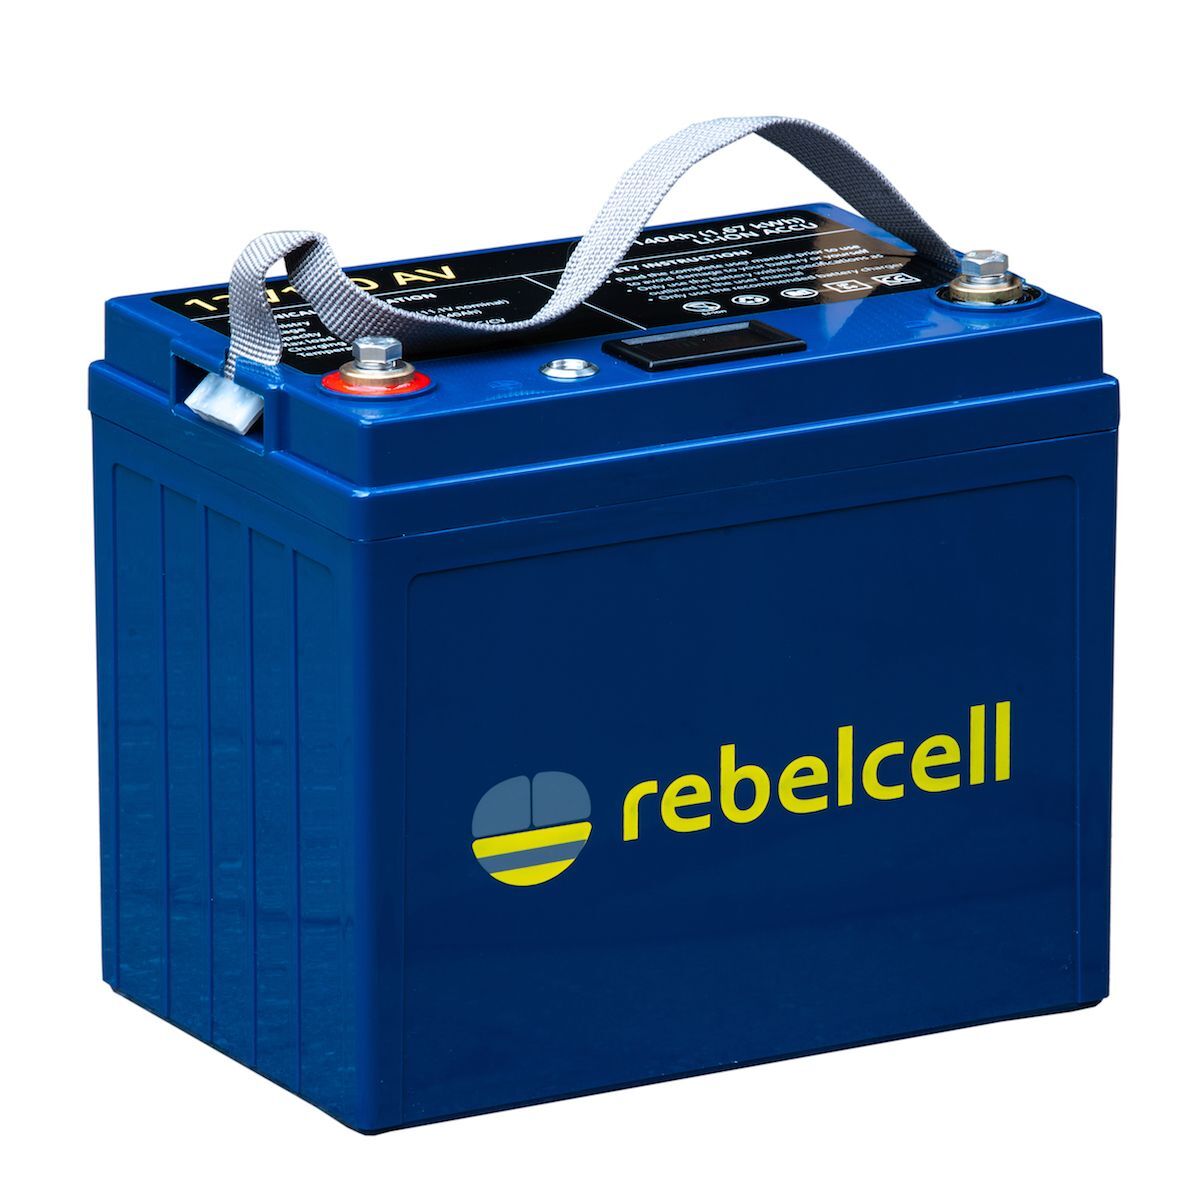 Rebelcell Li-Ion 12V/140A akku jännite/varausnäytöllä